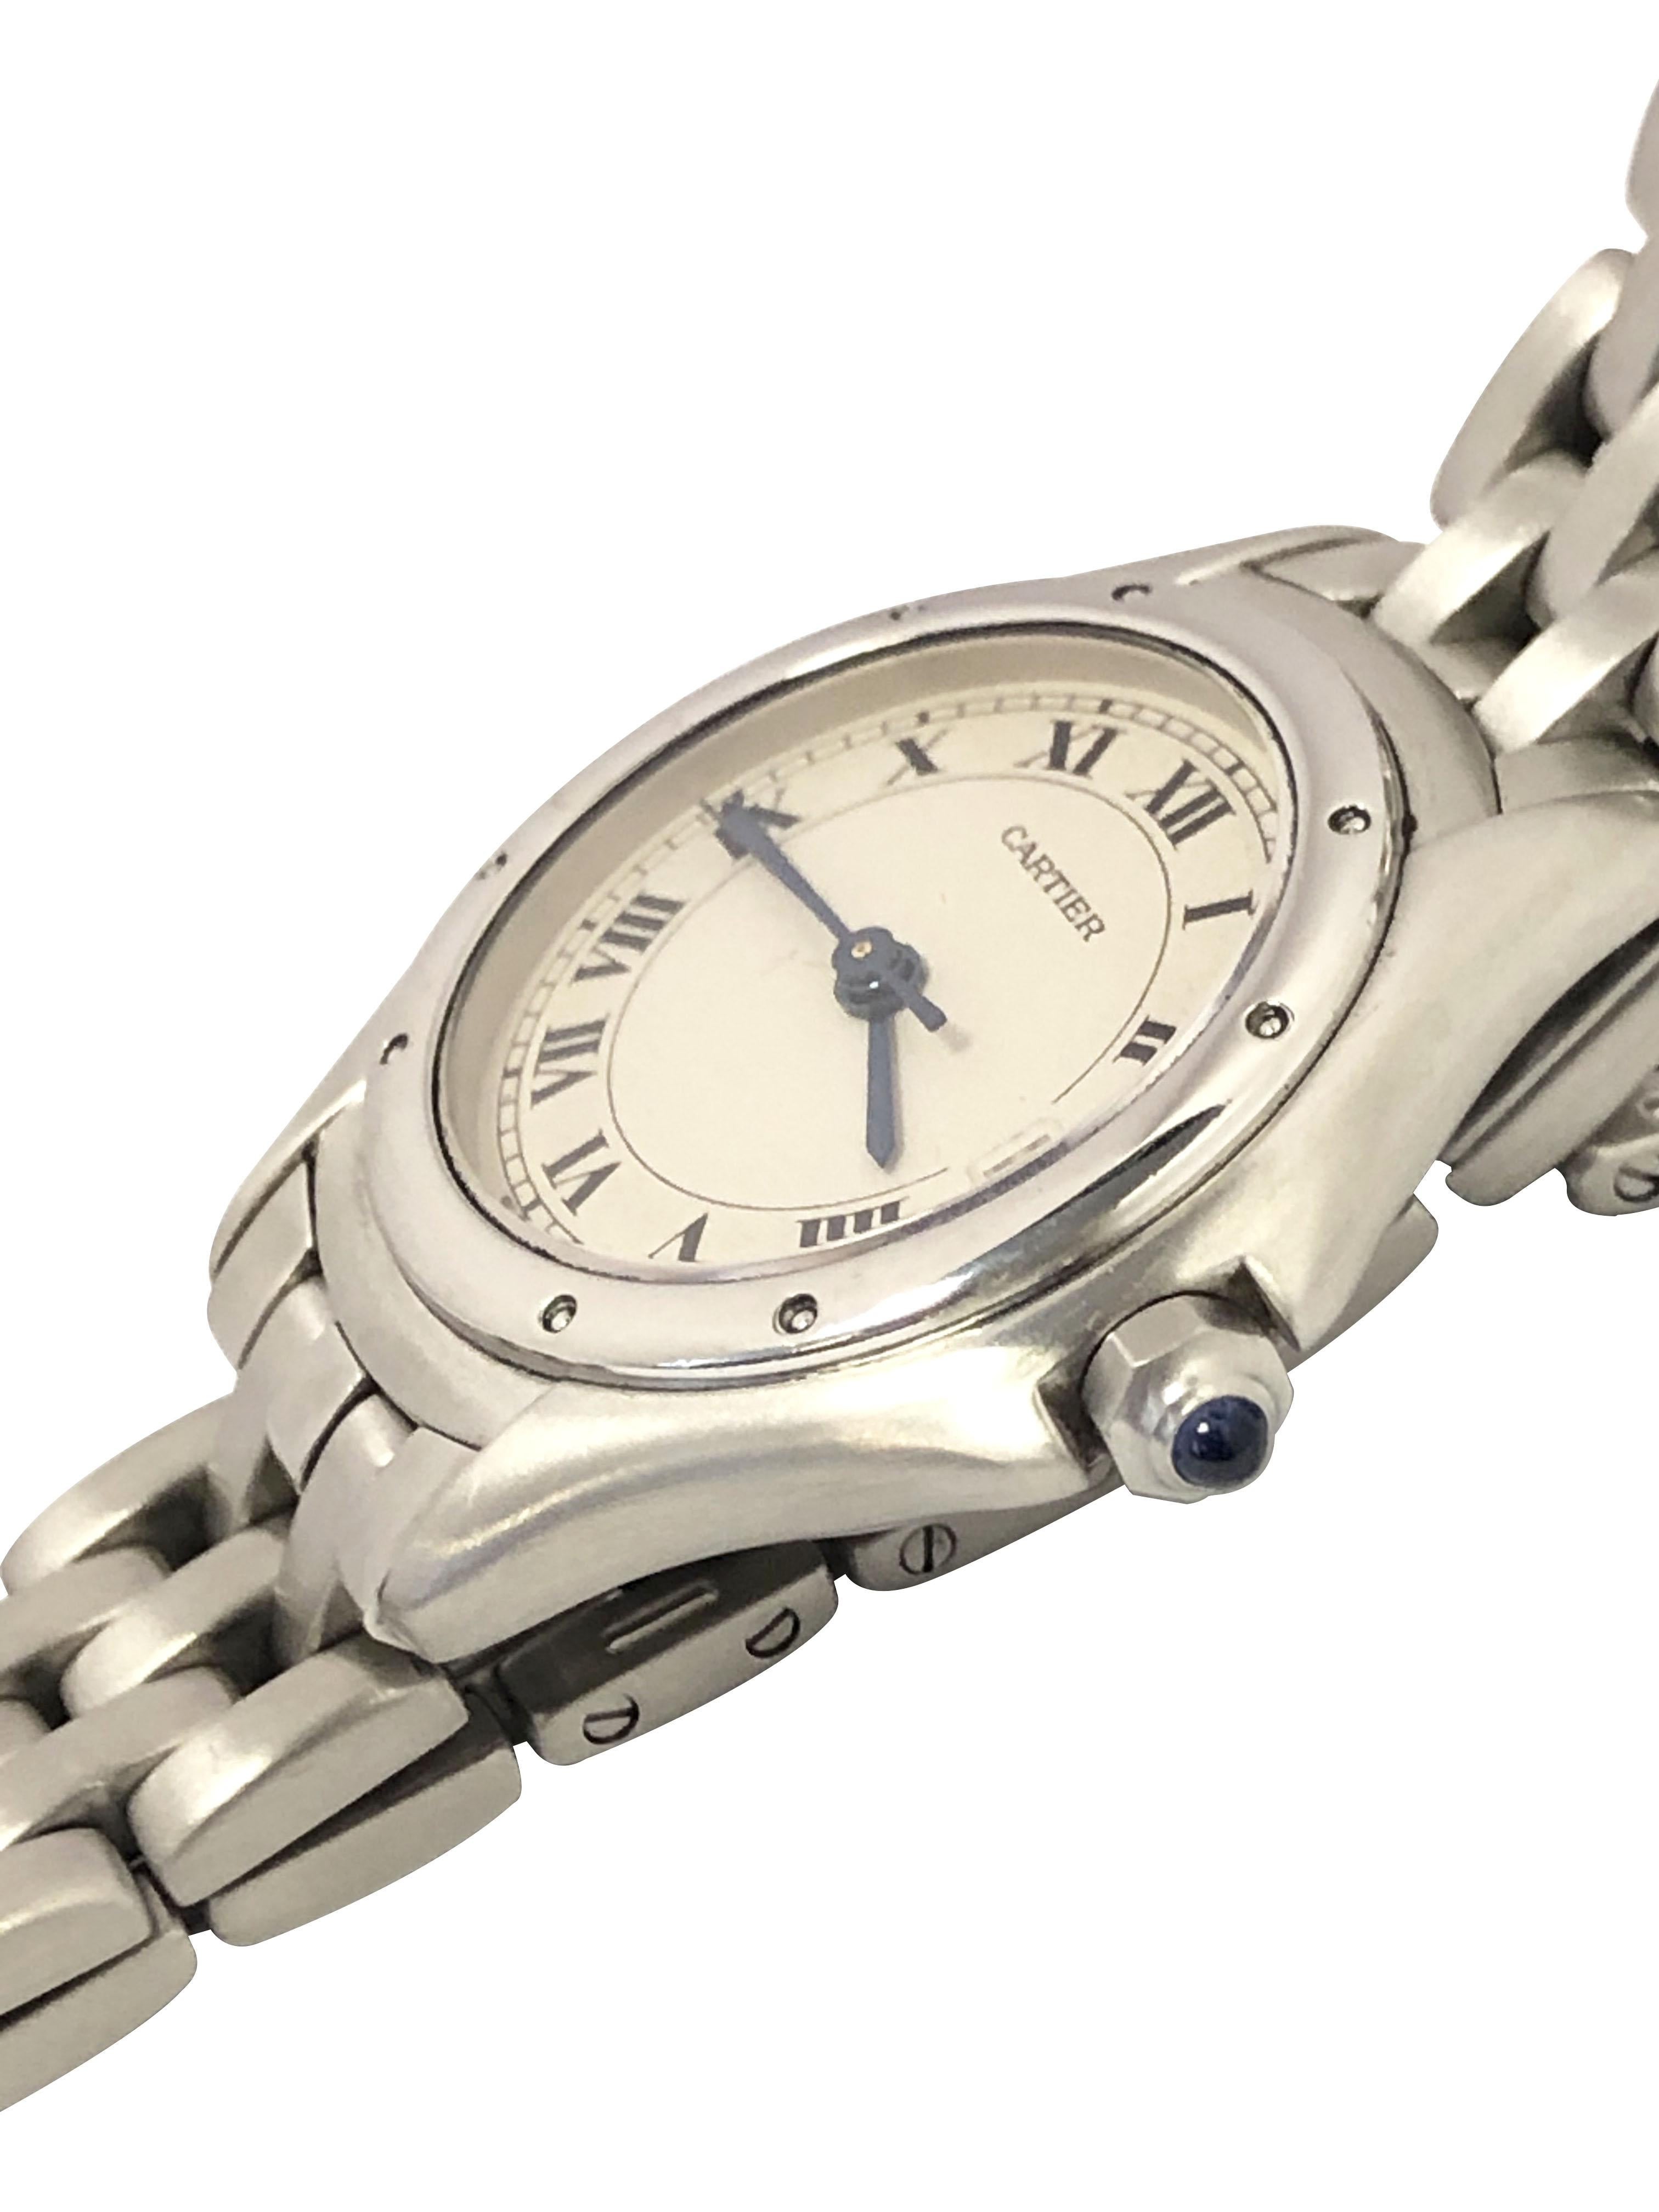 Montre-bracelet Cartier Classic Cougar pour femme des années 1990, boîtier en acier inoxydable de 26 mm, mouvement à quartz, cadran blanc avec chiffres romains noirs, aiguille des secondes, fenêtre du calendrier à la position 3 et couronne en